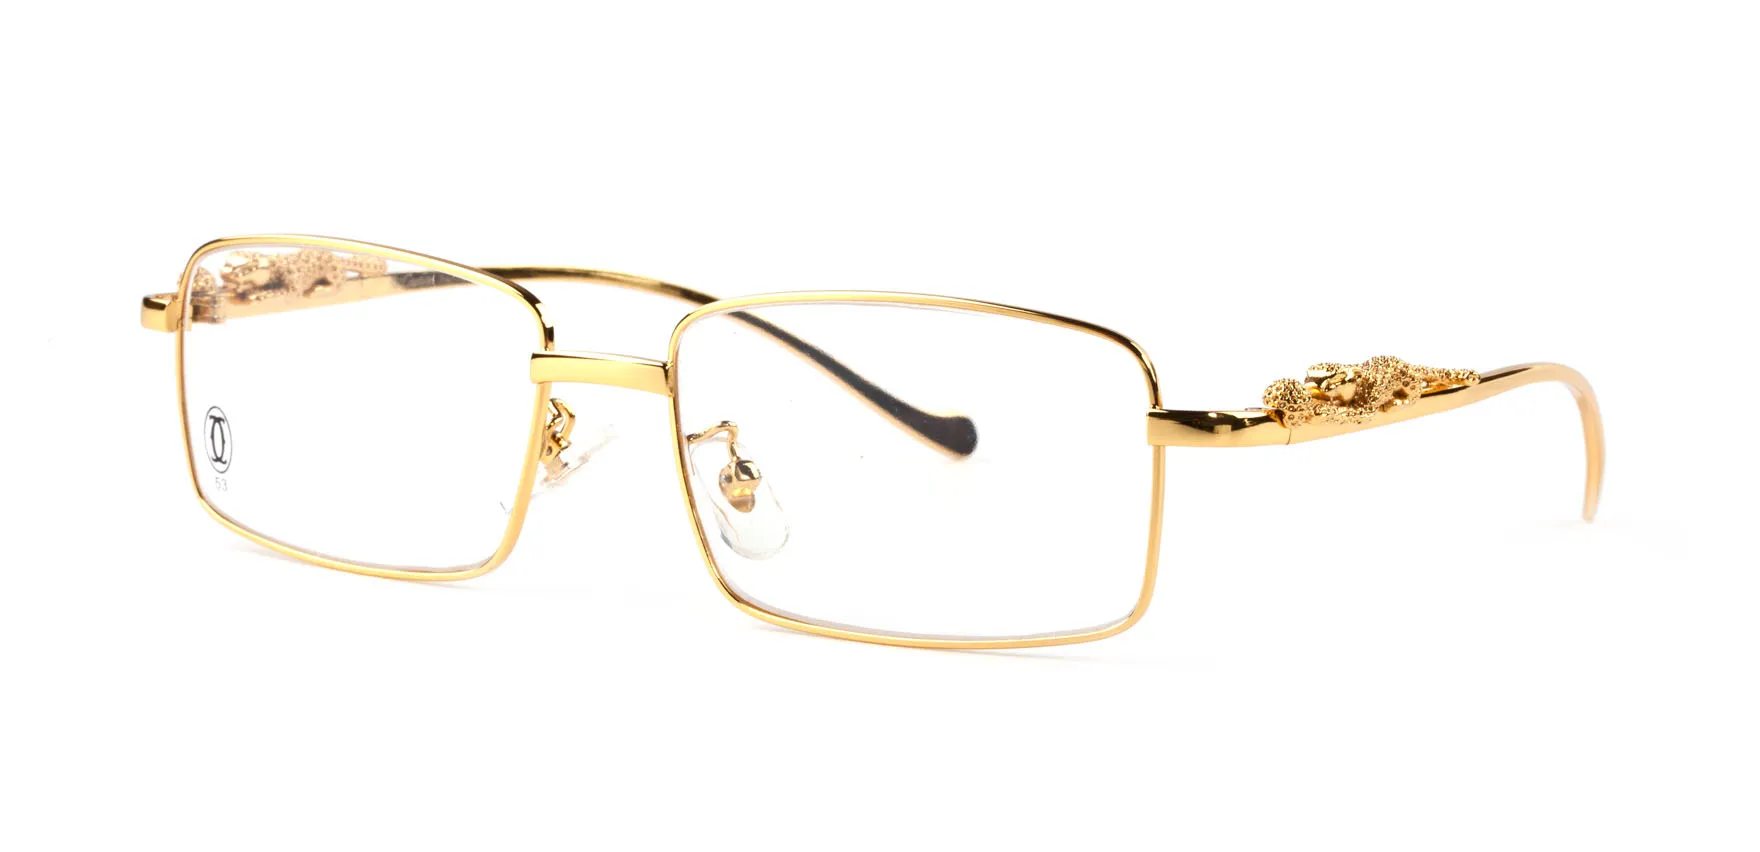 Оптовая прозрачная линза модные рамки ноги женские бренд дизайнер мужчин солнцезащитные очки очки